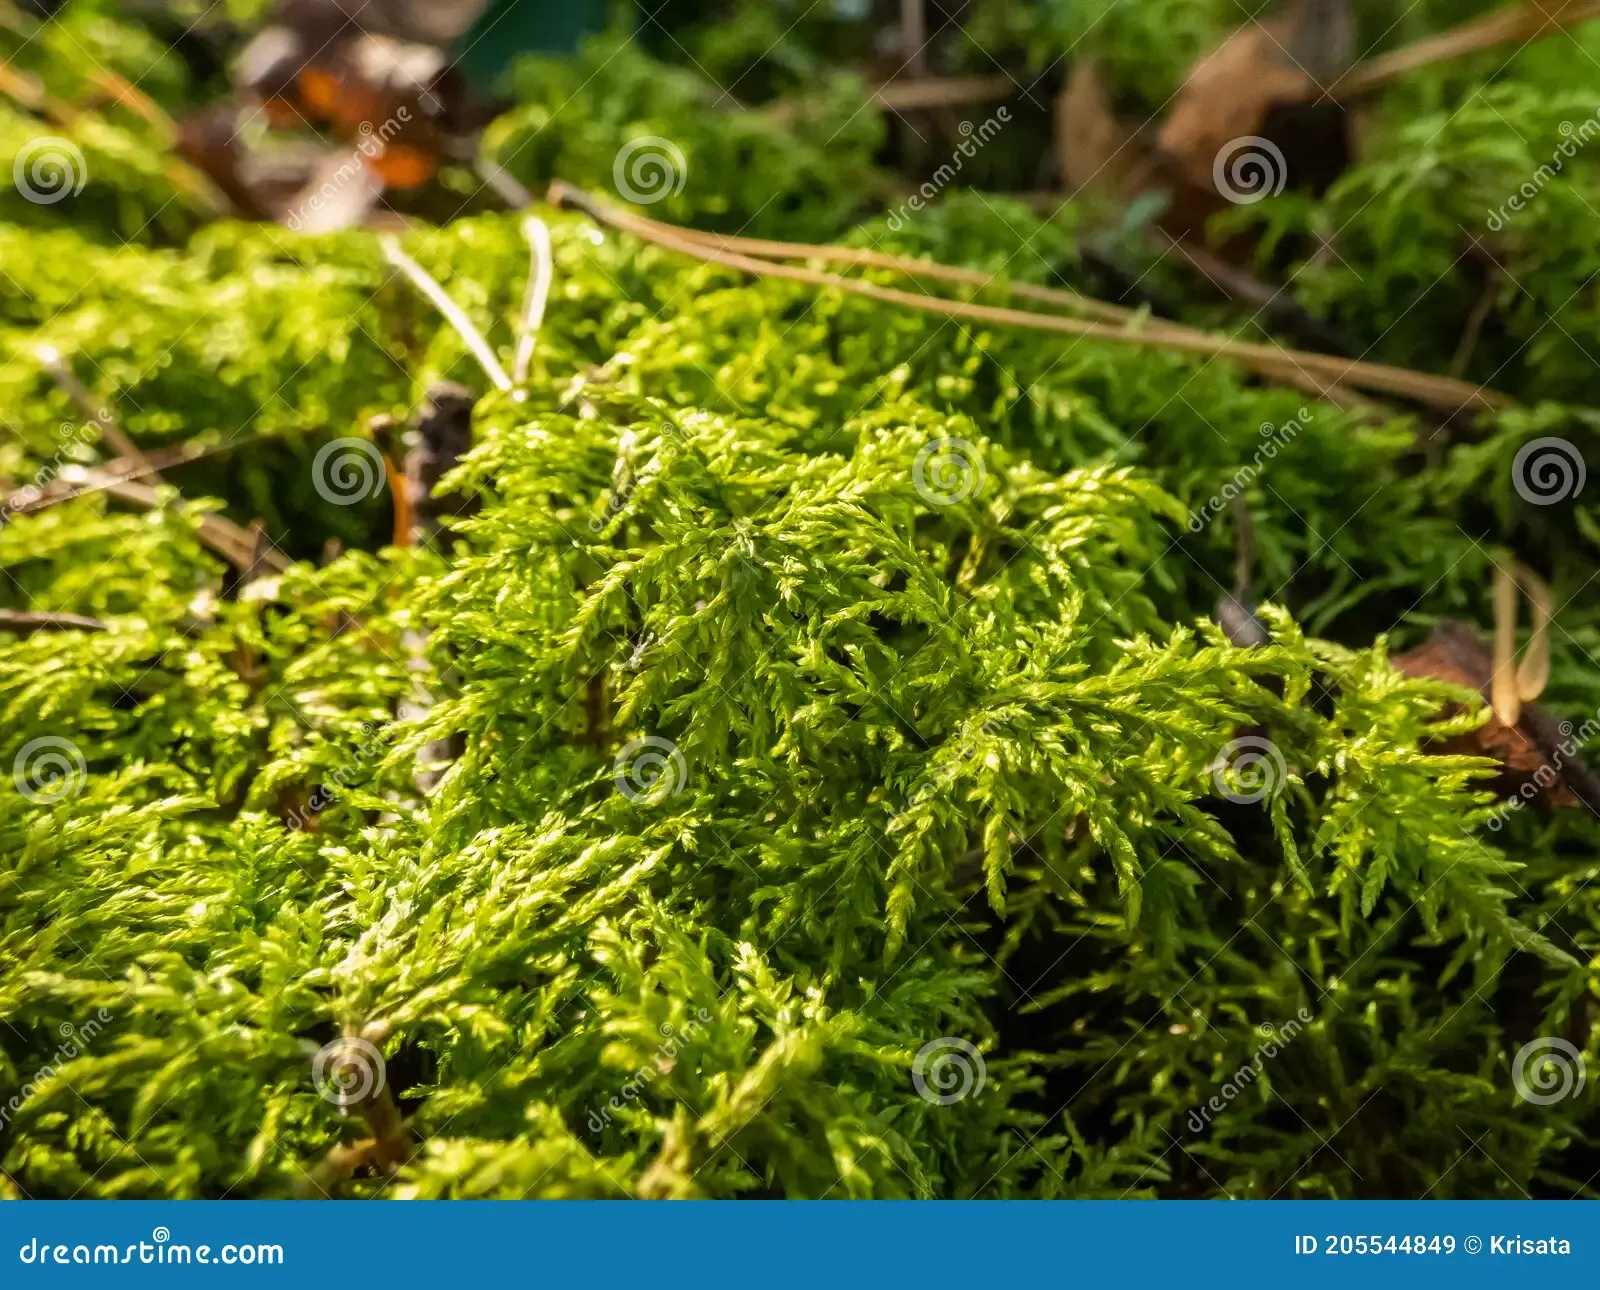 forest-floor-carpet-covered-green-moss-long-leaved-tail-wet-european-species-anomodon-longifolius-macro-shot-bogmoss-plant-205544849.jpg